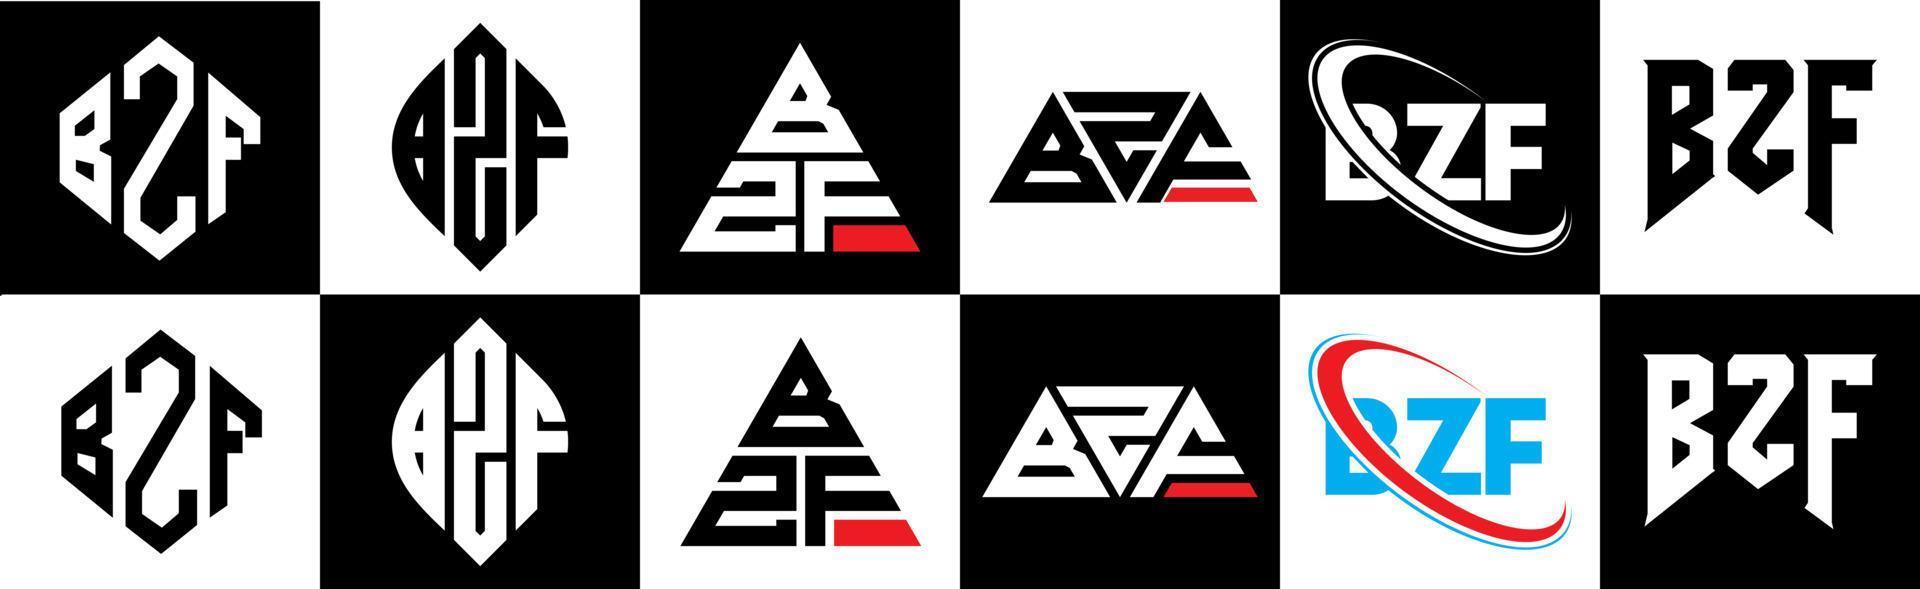 création de logo de lettre bzf en six styles. polygone bzf, cercle, triangle, hexagone, style plat et simple avec logo de lettre de variation de couleur noir et blanc dans un plan de travail. logo bzf minimaliste et classique vecteur